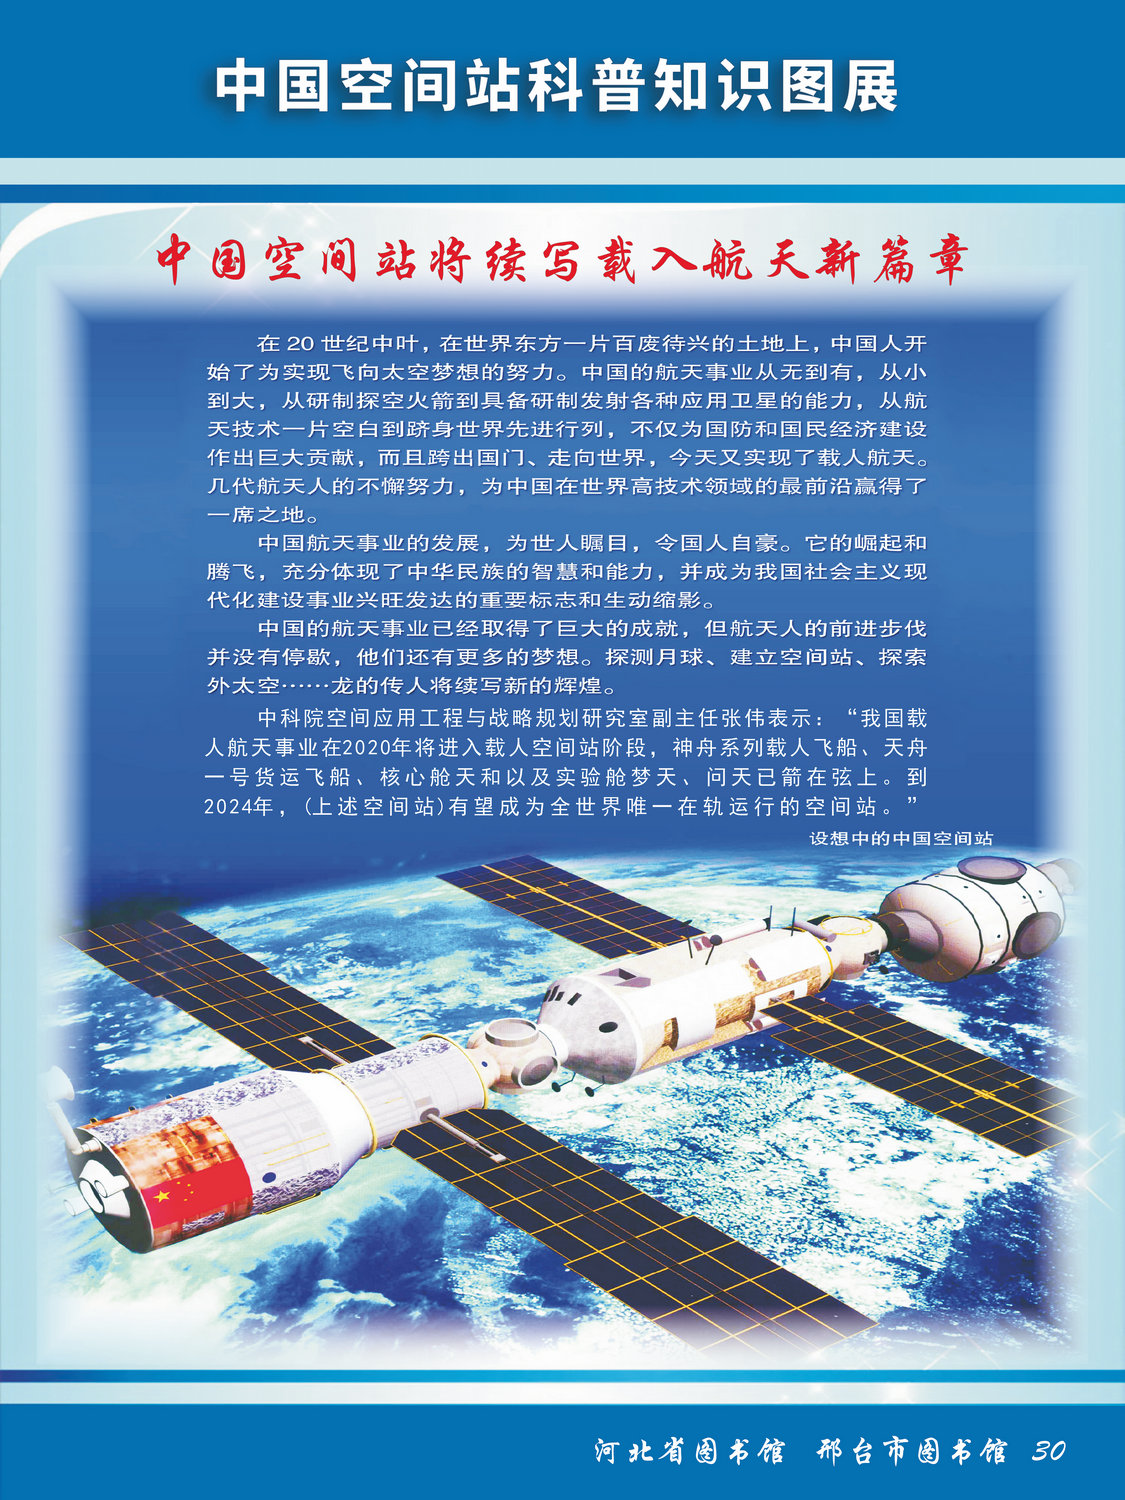 中国空间站科普知识图文展_图30